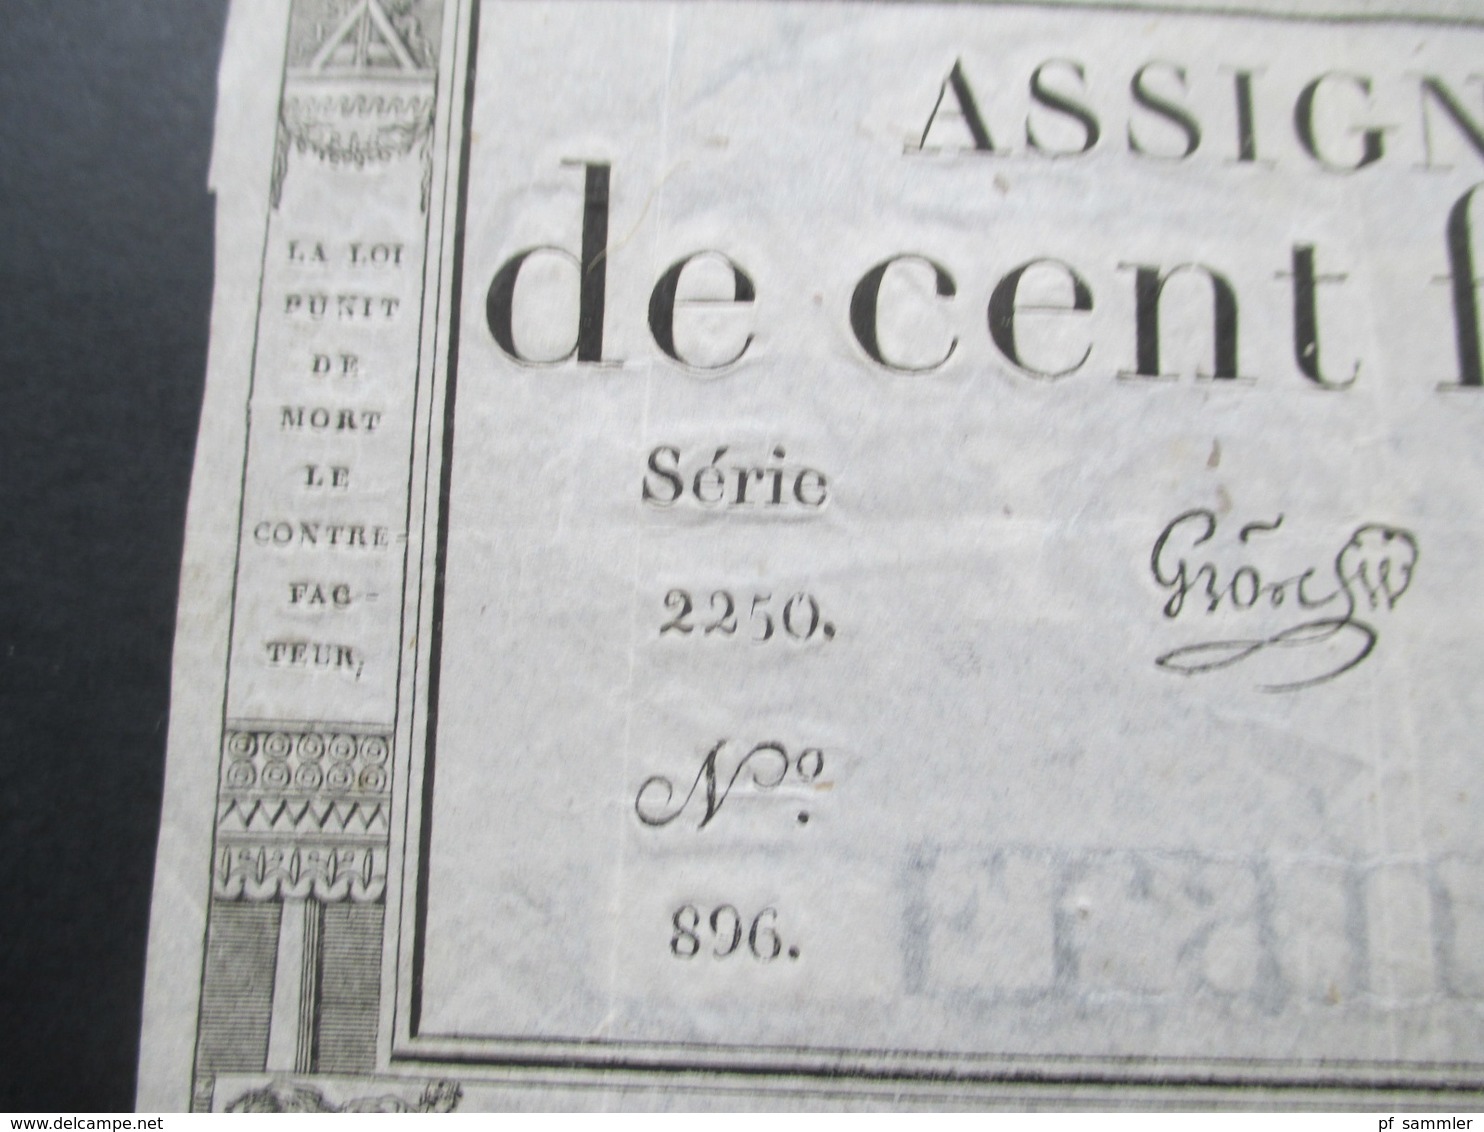 Frankreich Assignat De Cent Francs Serie 2250 No 896. Cree Le 18 Nivose L'an 3e Republique Francaise - ...-1889 Circulated During XIXth